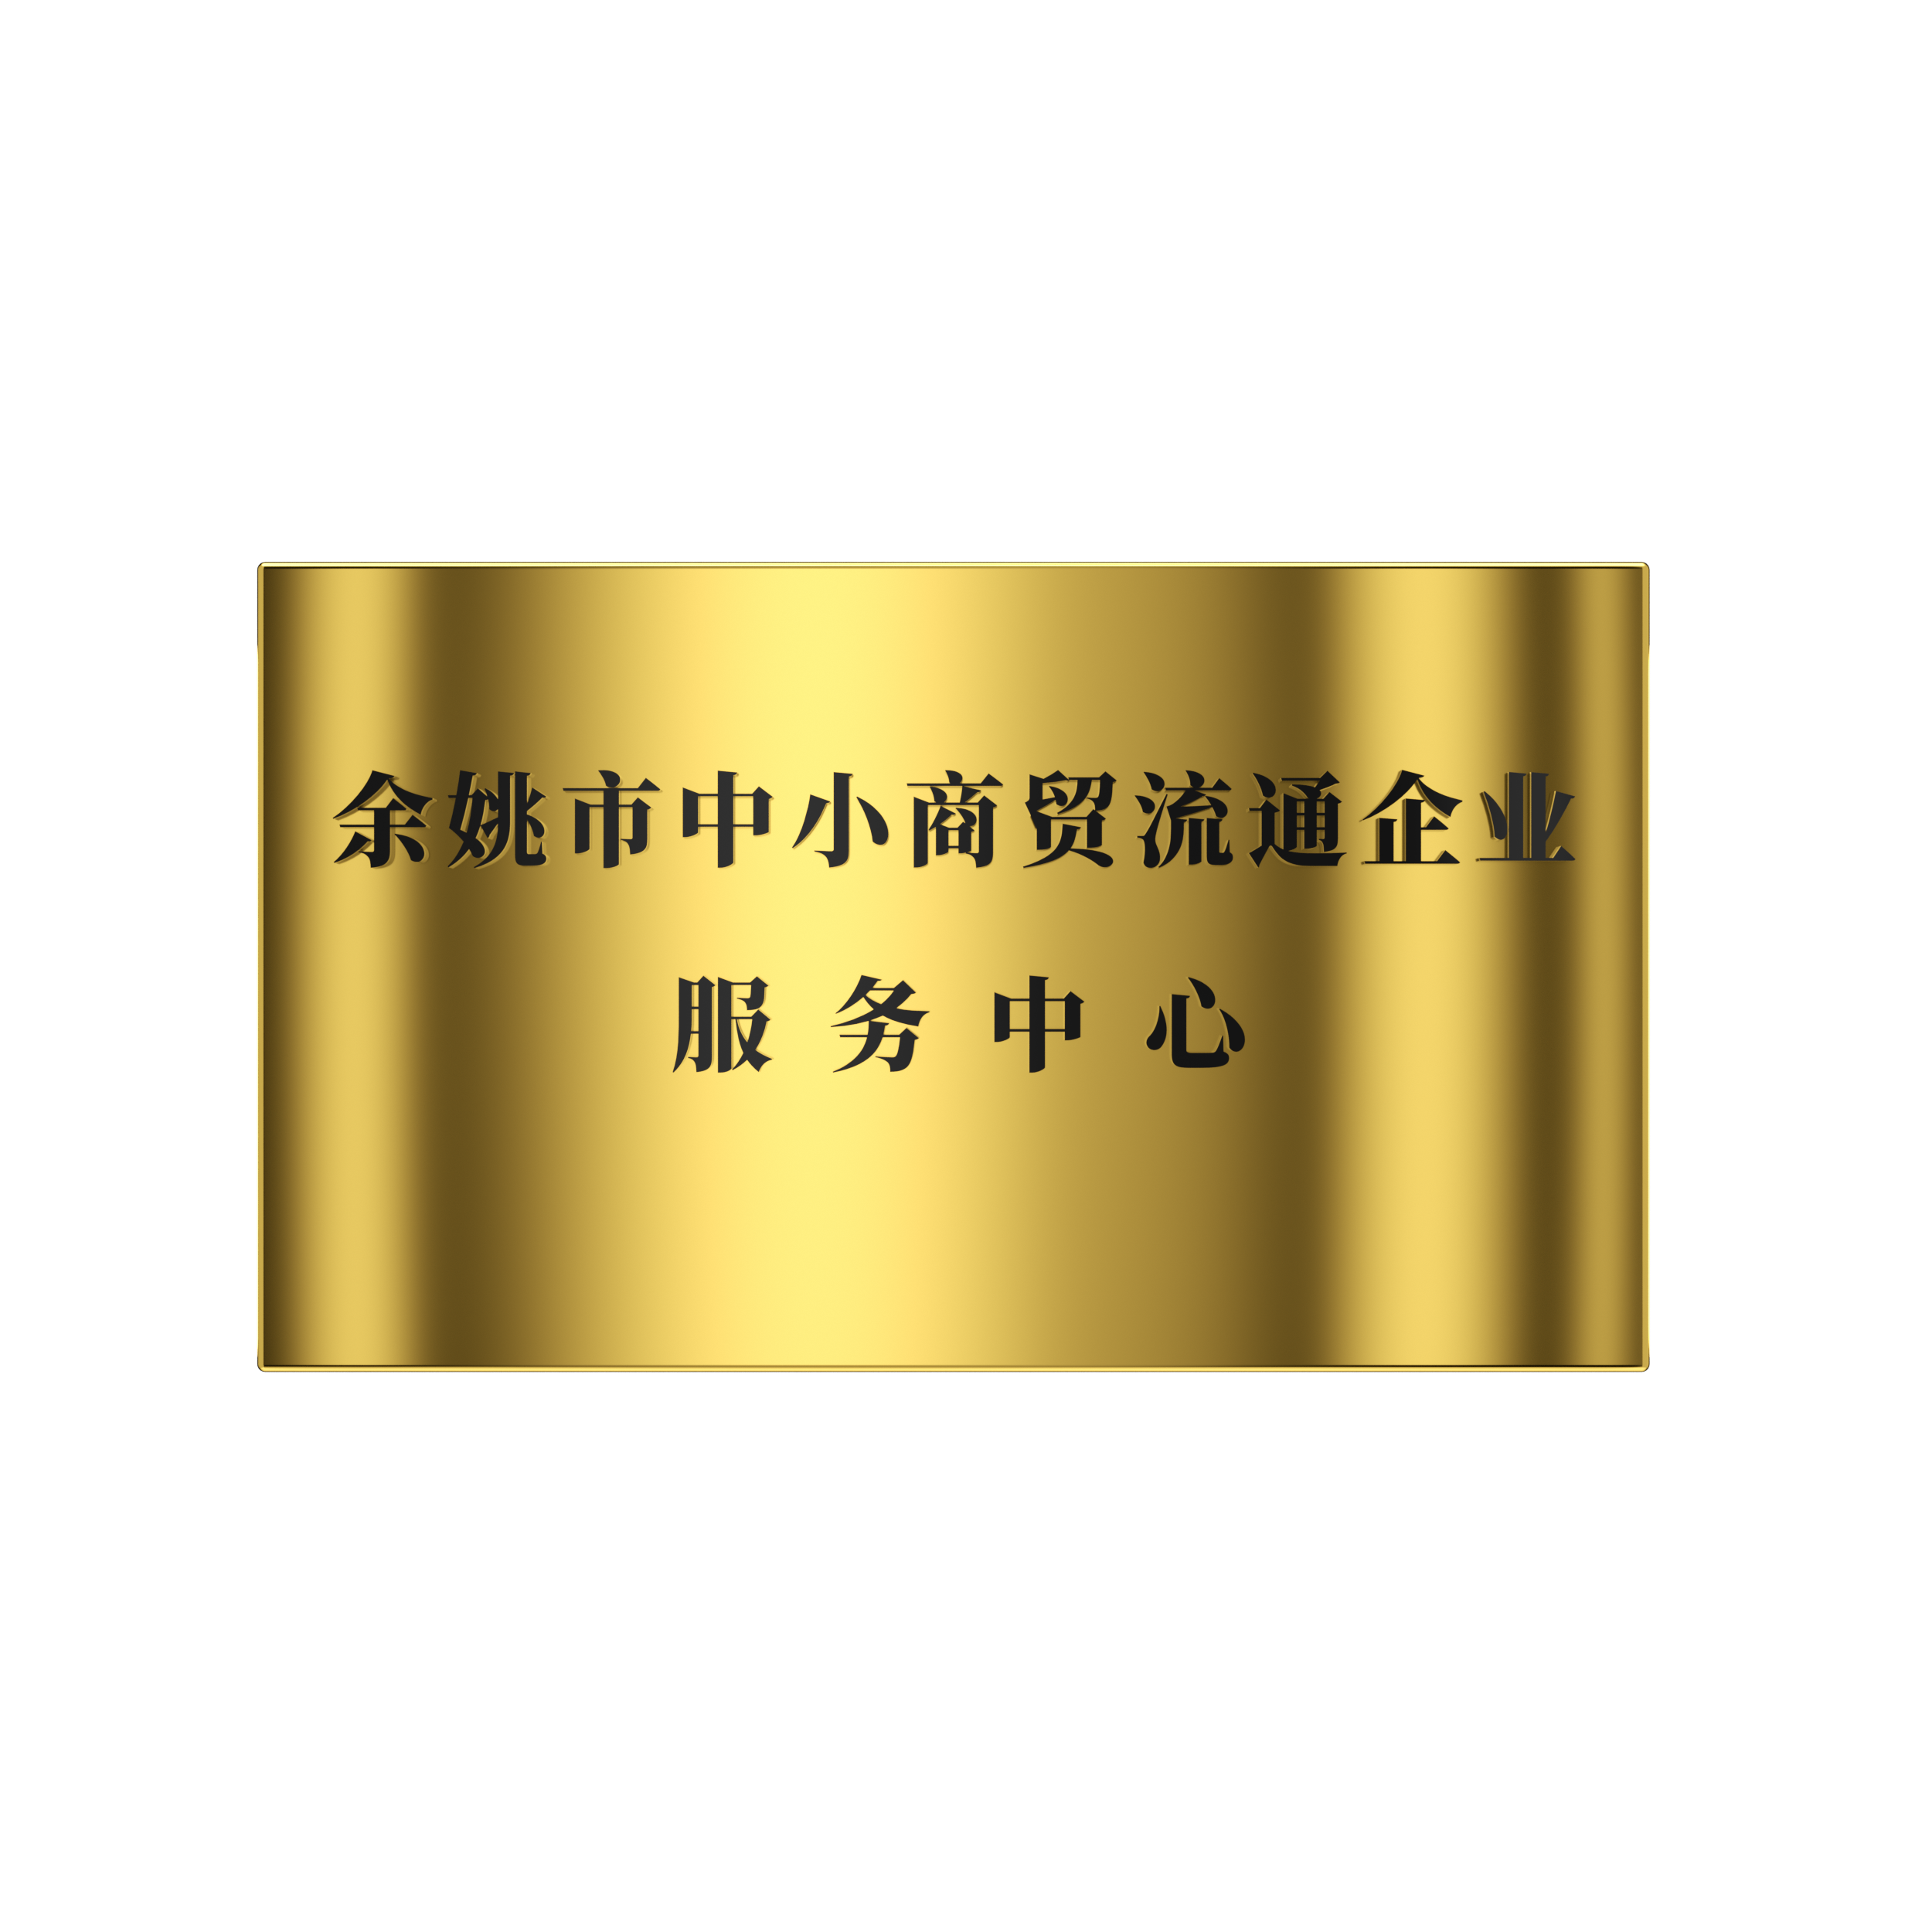 2018年 餘姚市中(zhōng)小(xiǎo)商(shāng)貿流通企業服務中(zhōng)心